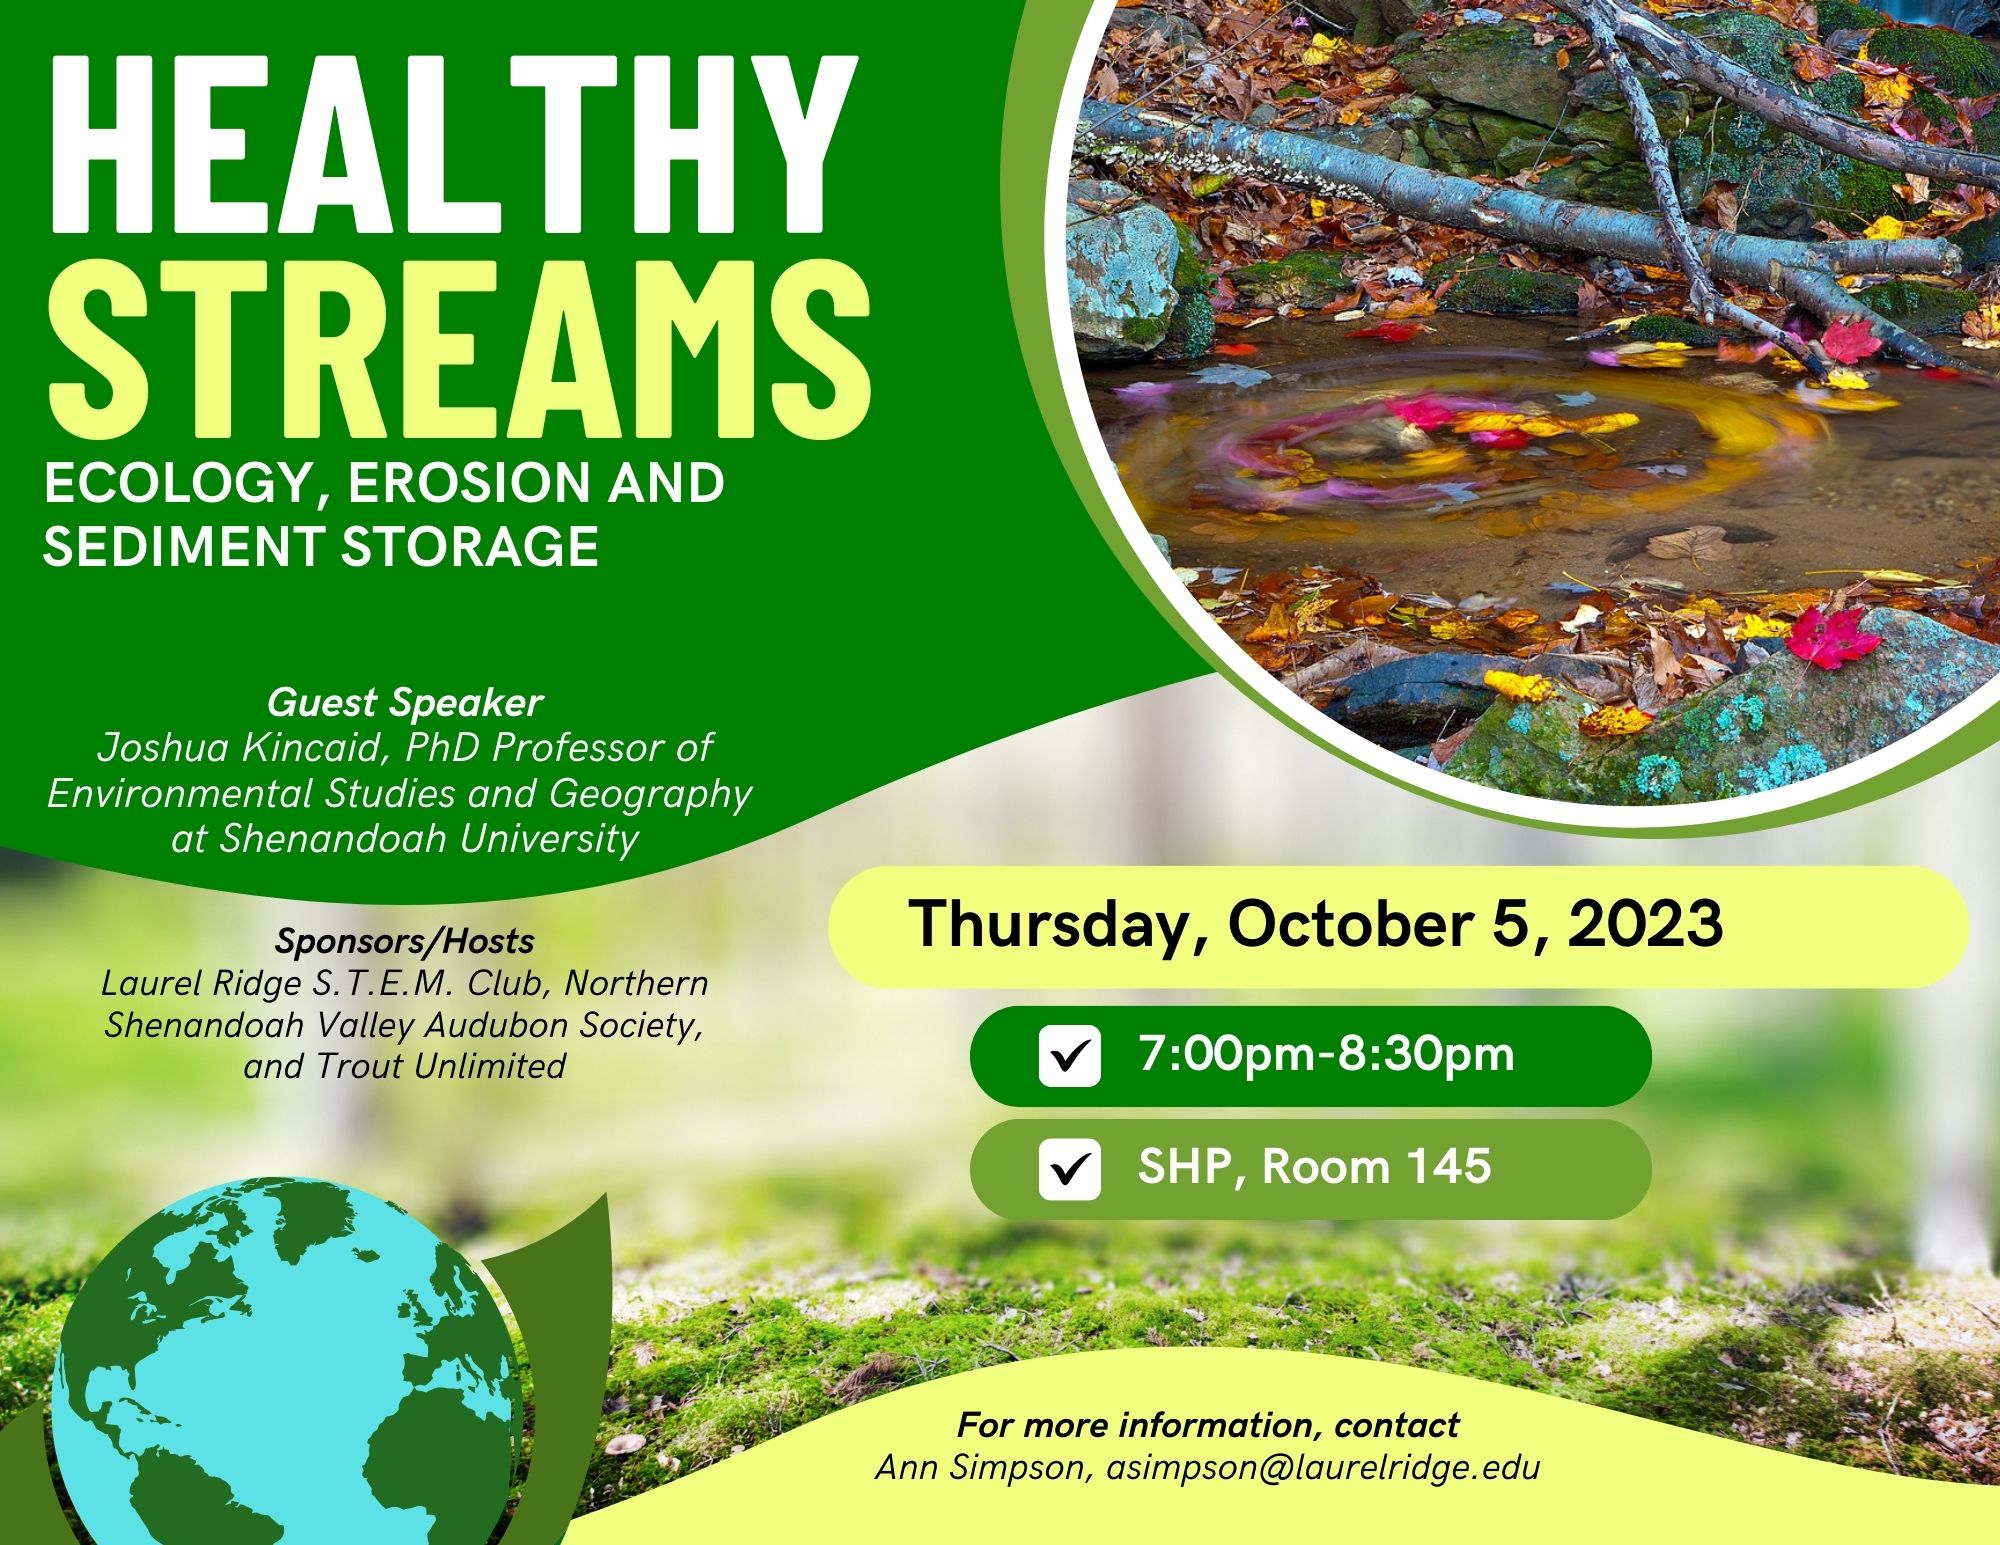 Healthy Streams flyer